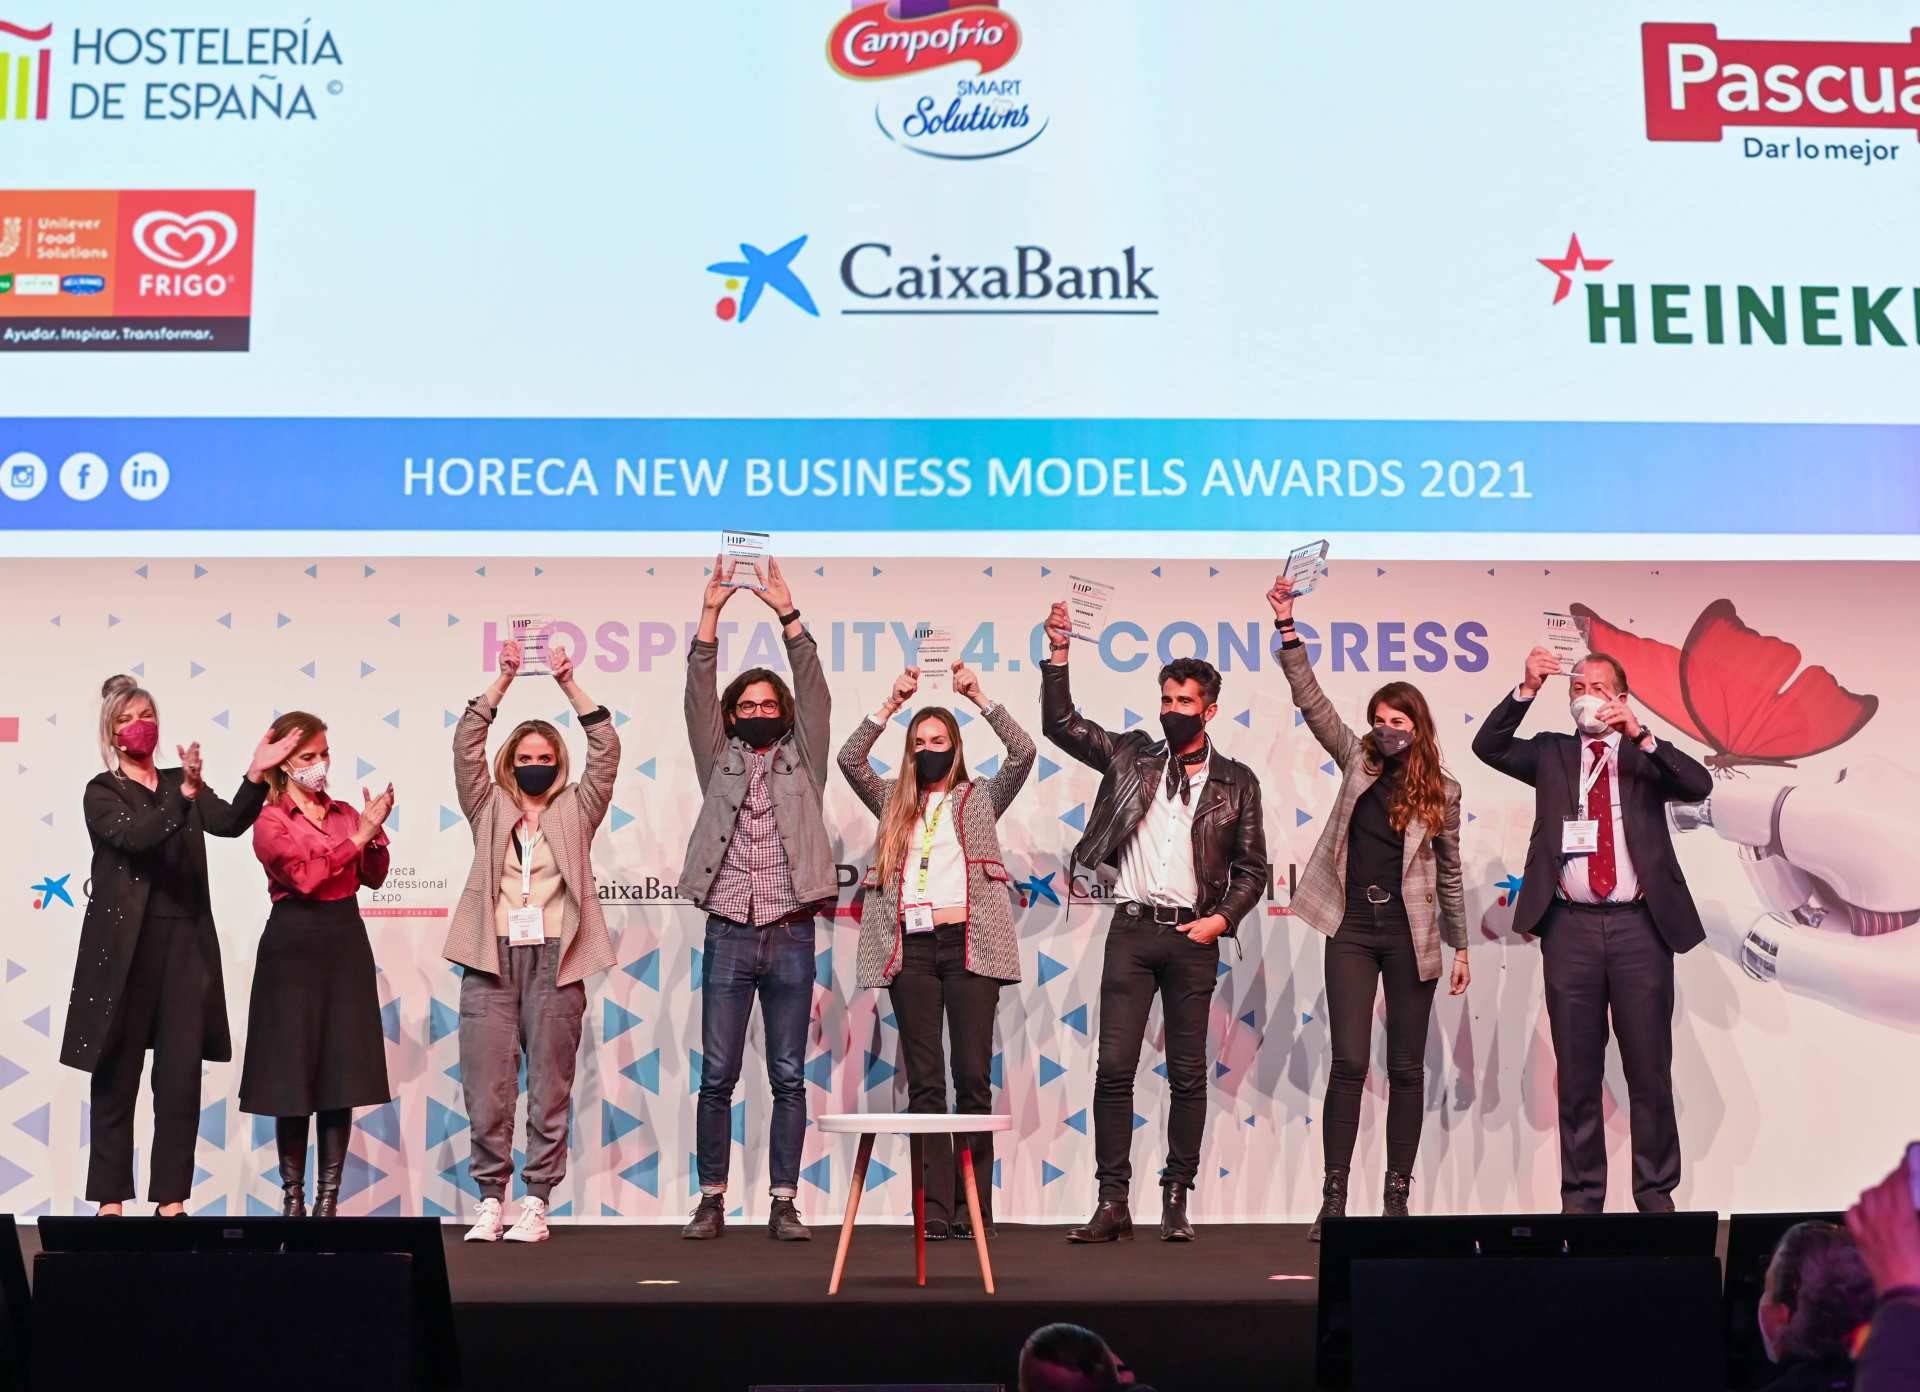 Los galardonados en los Horeca New Business Models Awards 2021 por sus proyectos innovadores